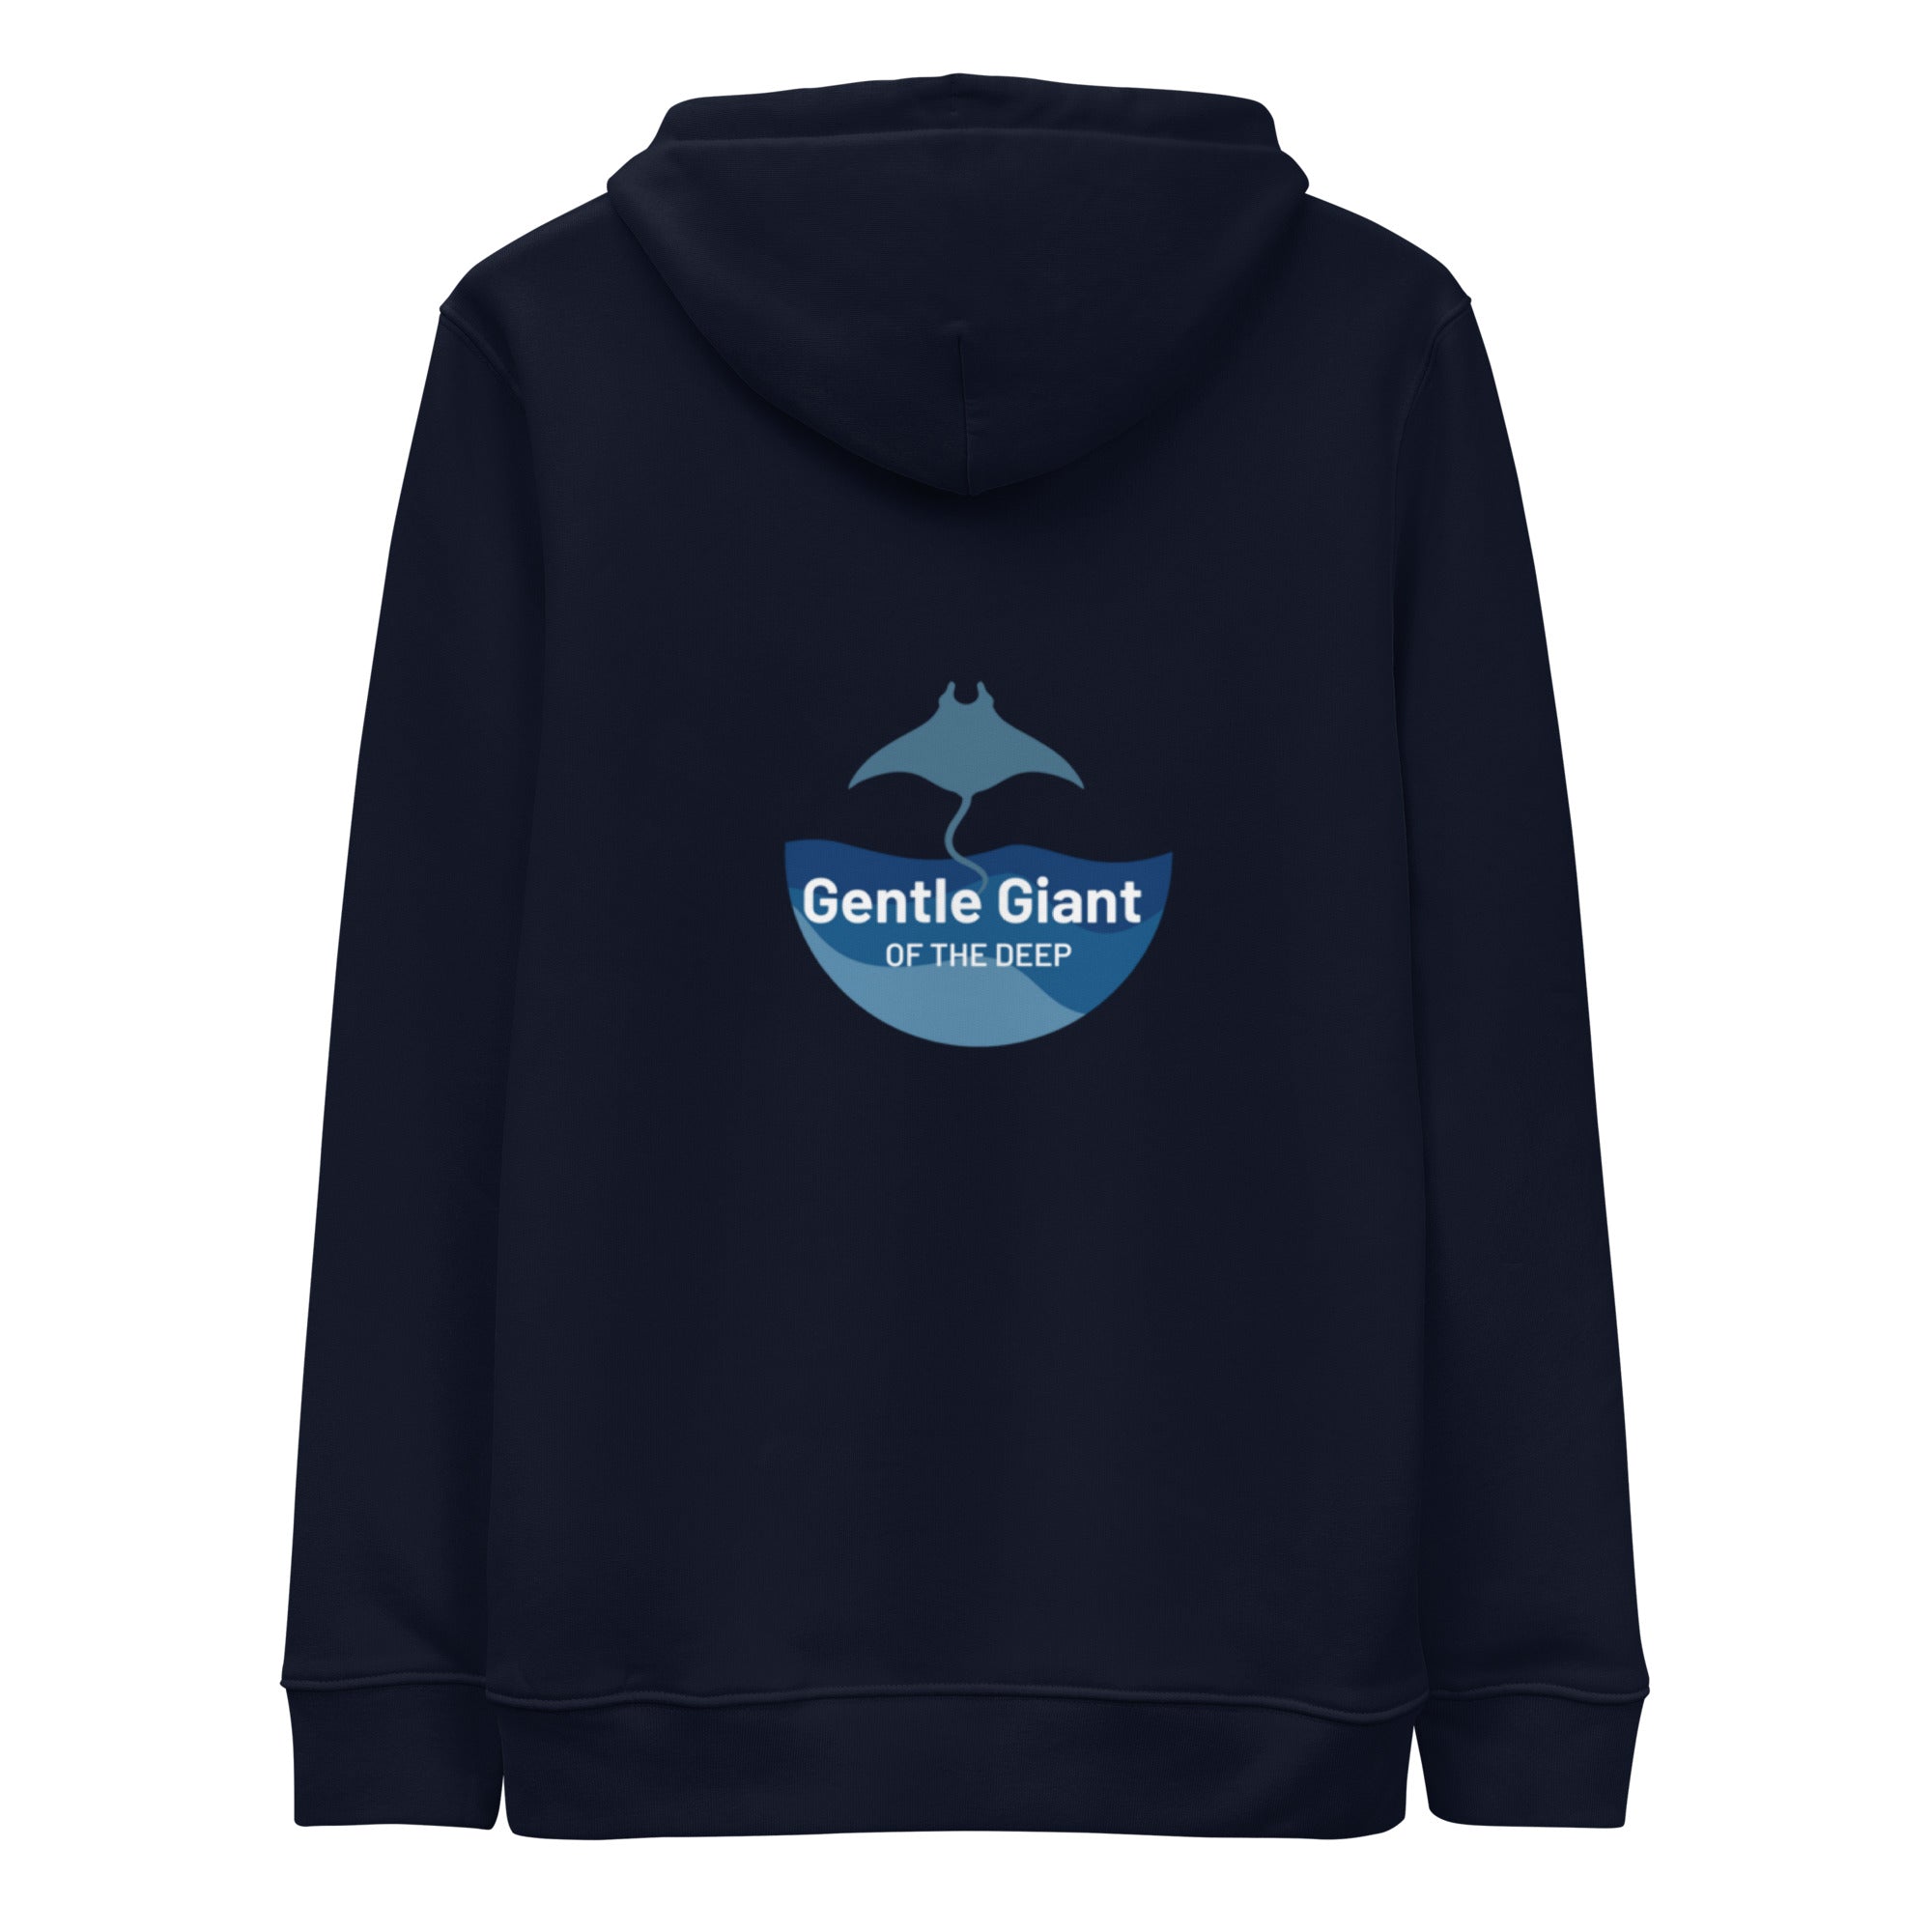 Gentle Giant hoodie by Tropical Seas Clothing